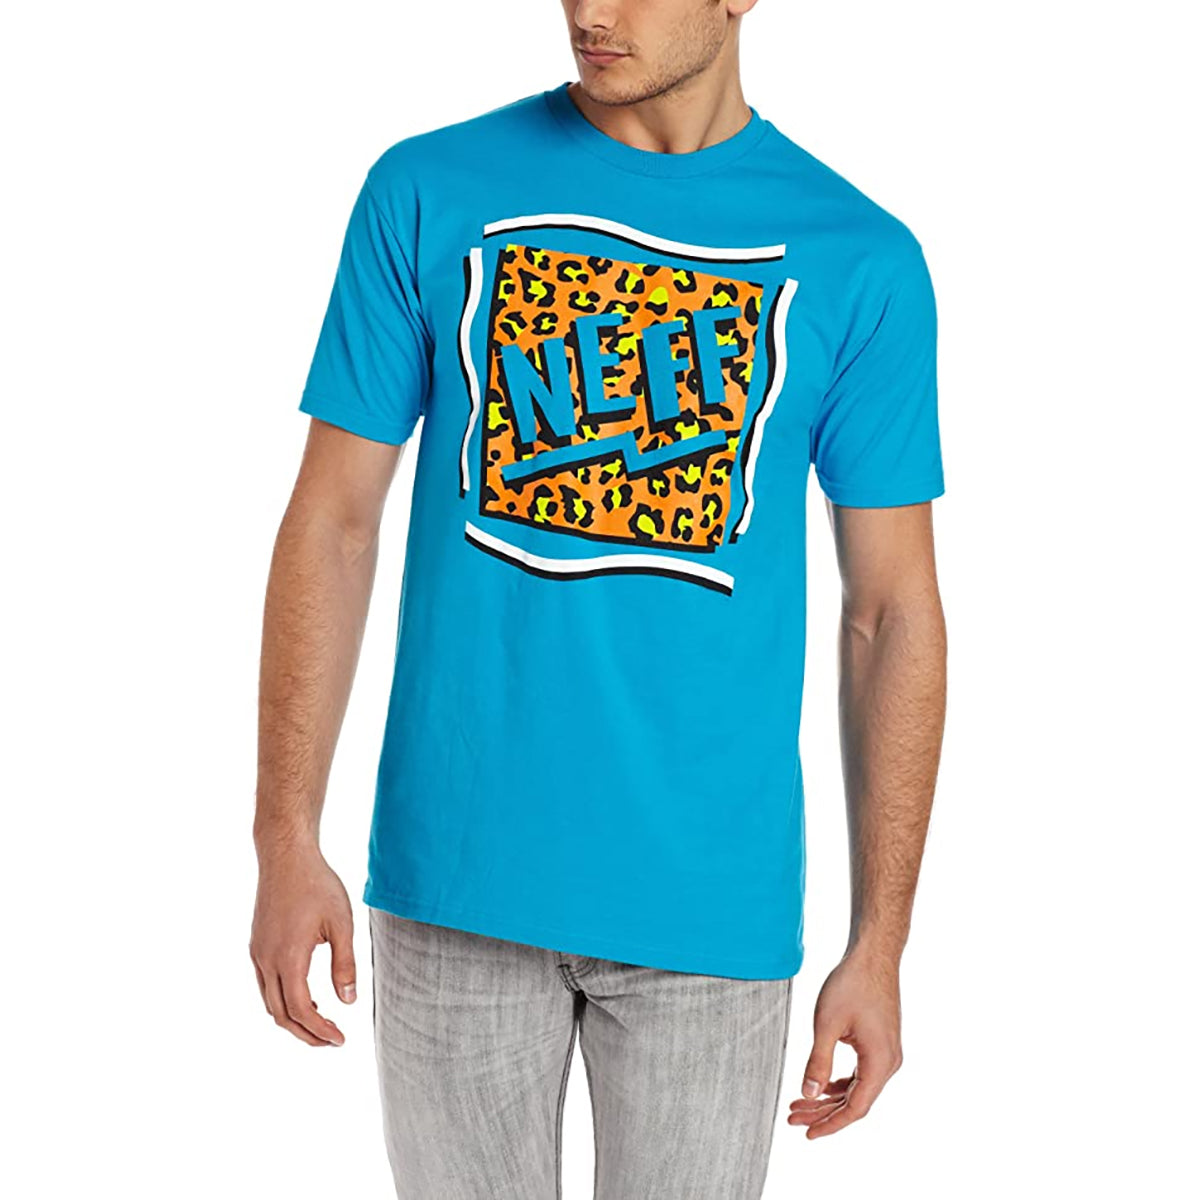 Neff Dafty Men's Short-Sleeve Shirts - Turquoise